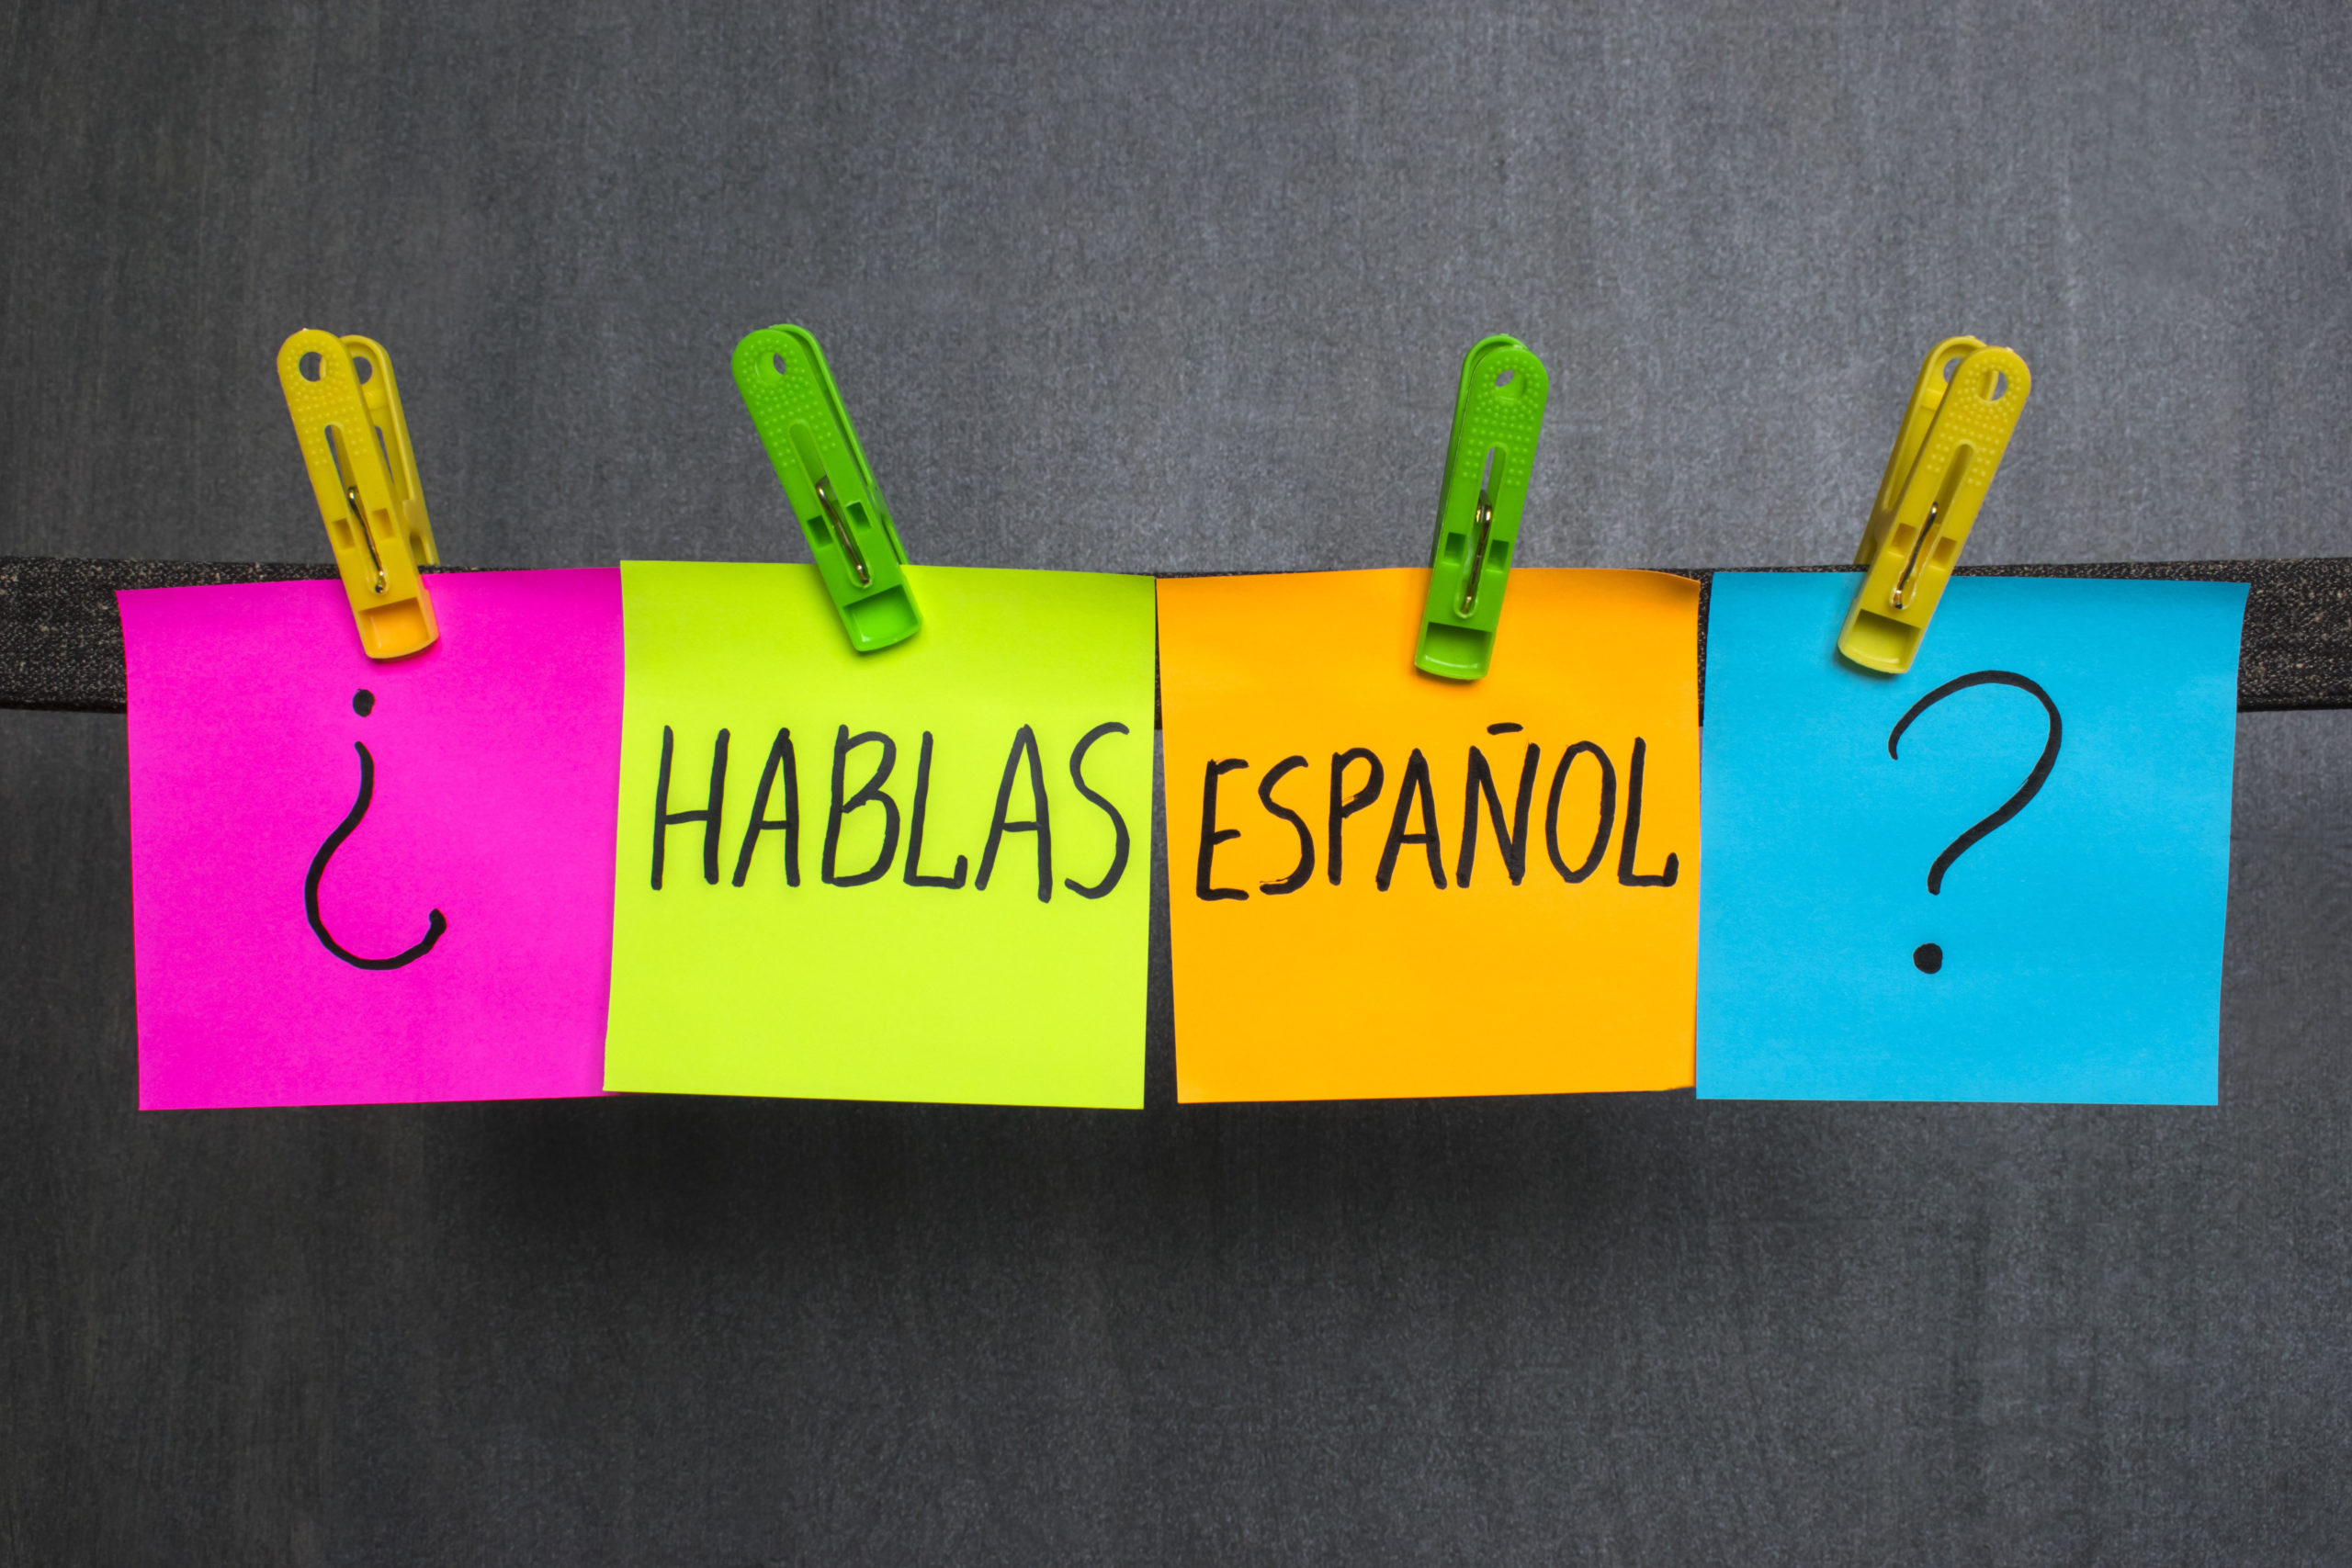 Espanhol da Argentina, Uruguai e Paraguai: três maneiras de falar